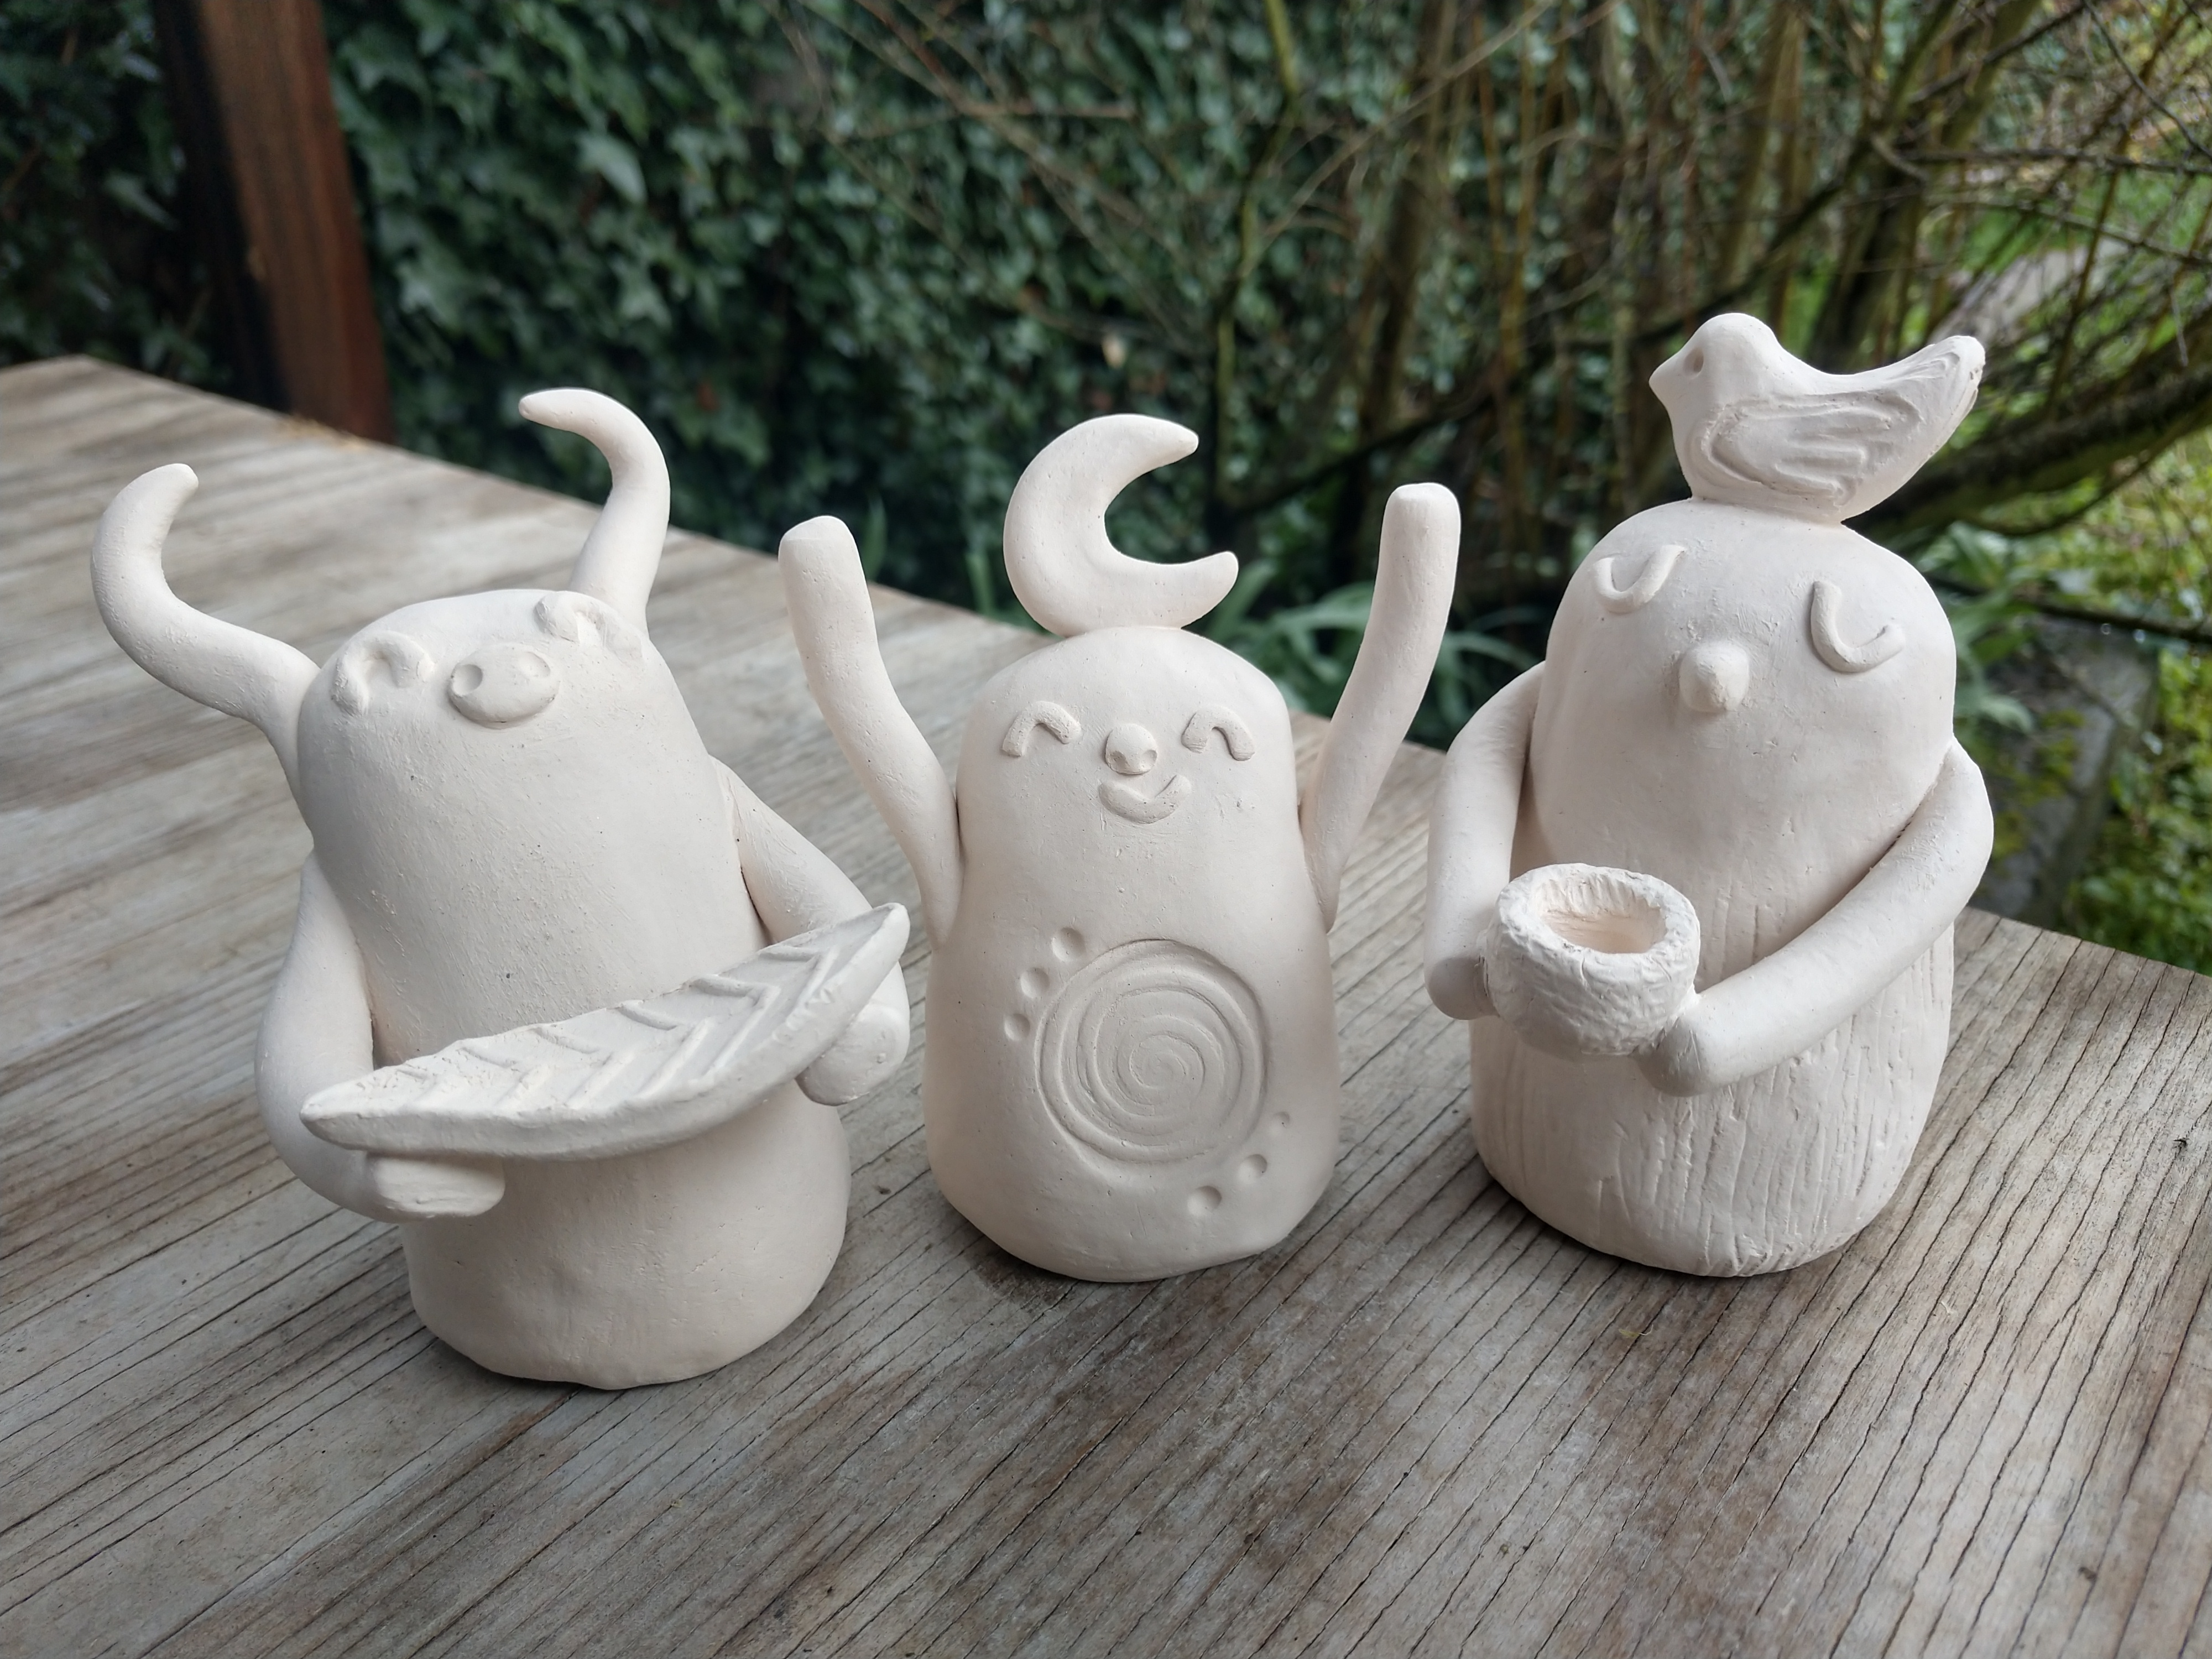 Ceramic creatures